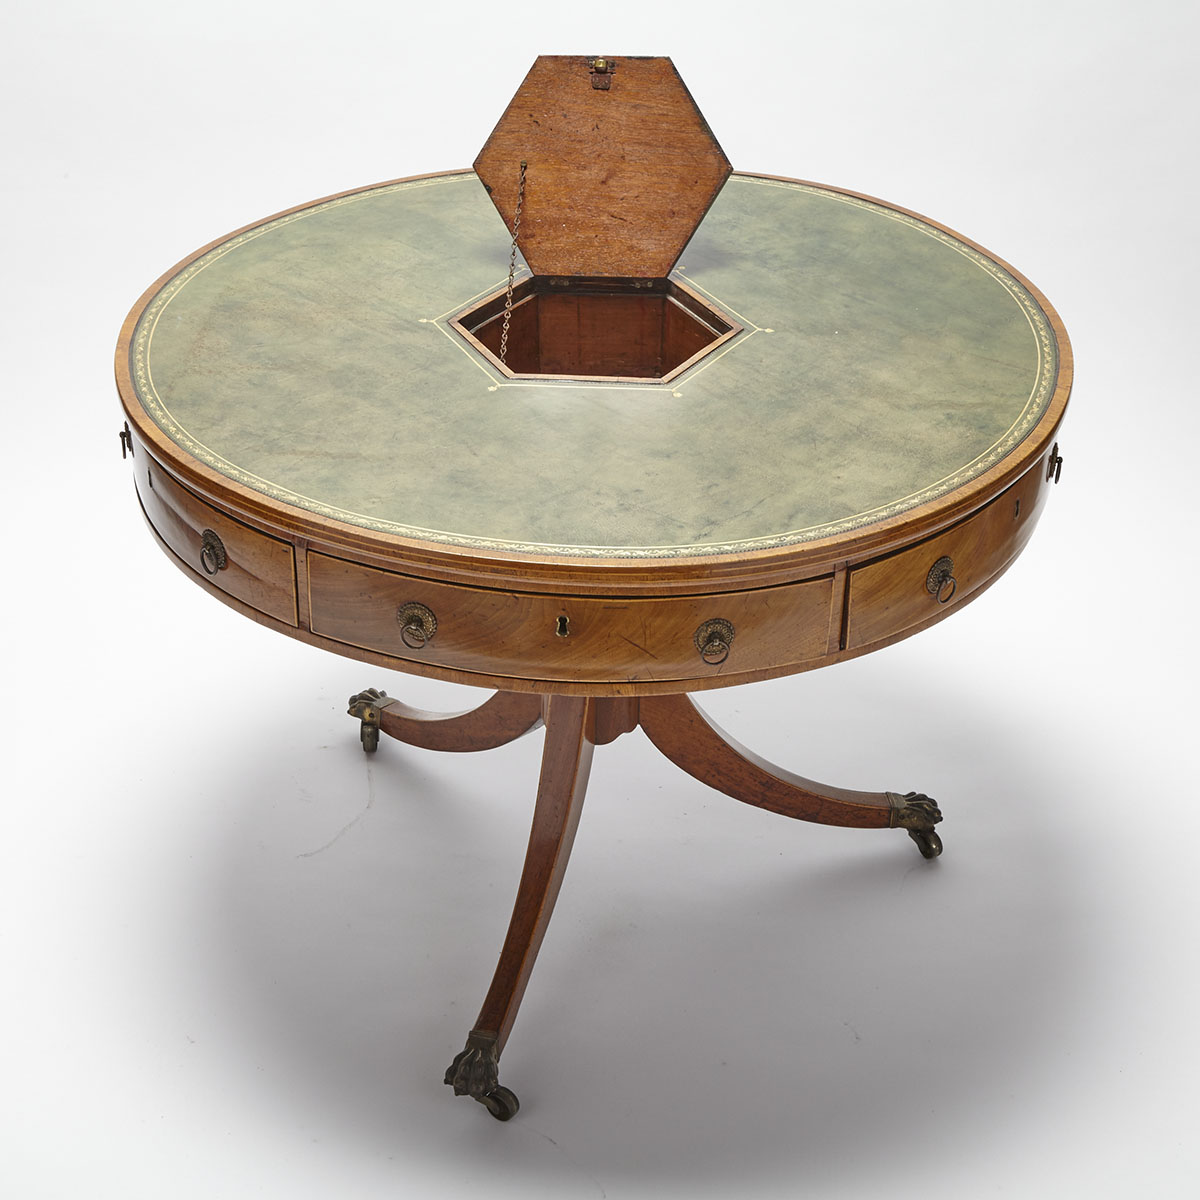 Regency Mahogany Rent Table, early 19th century